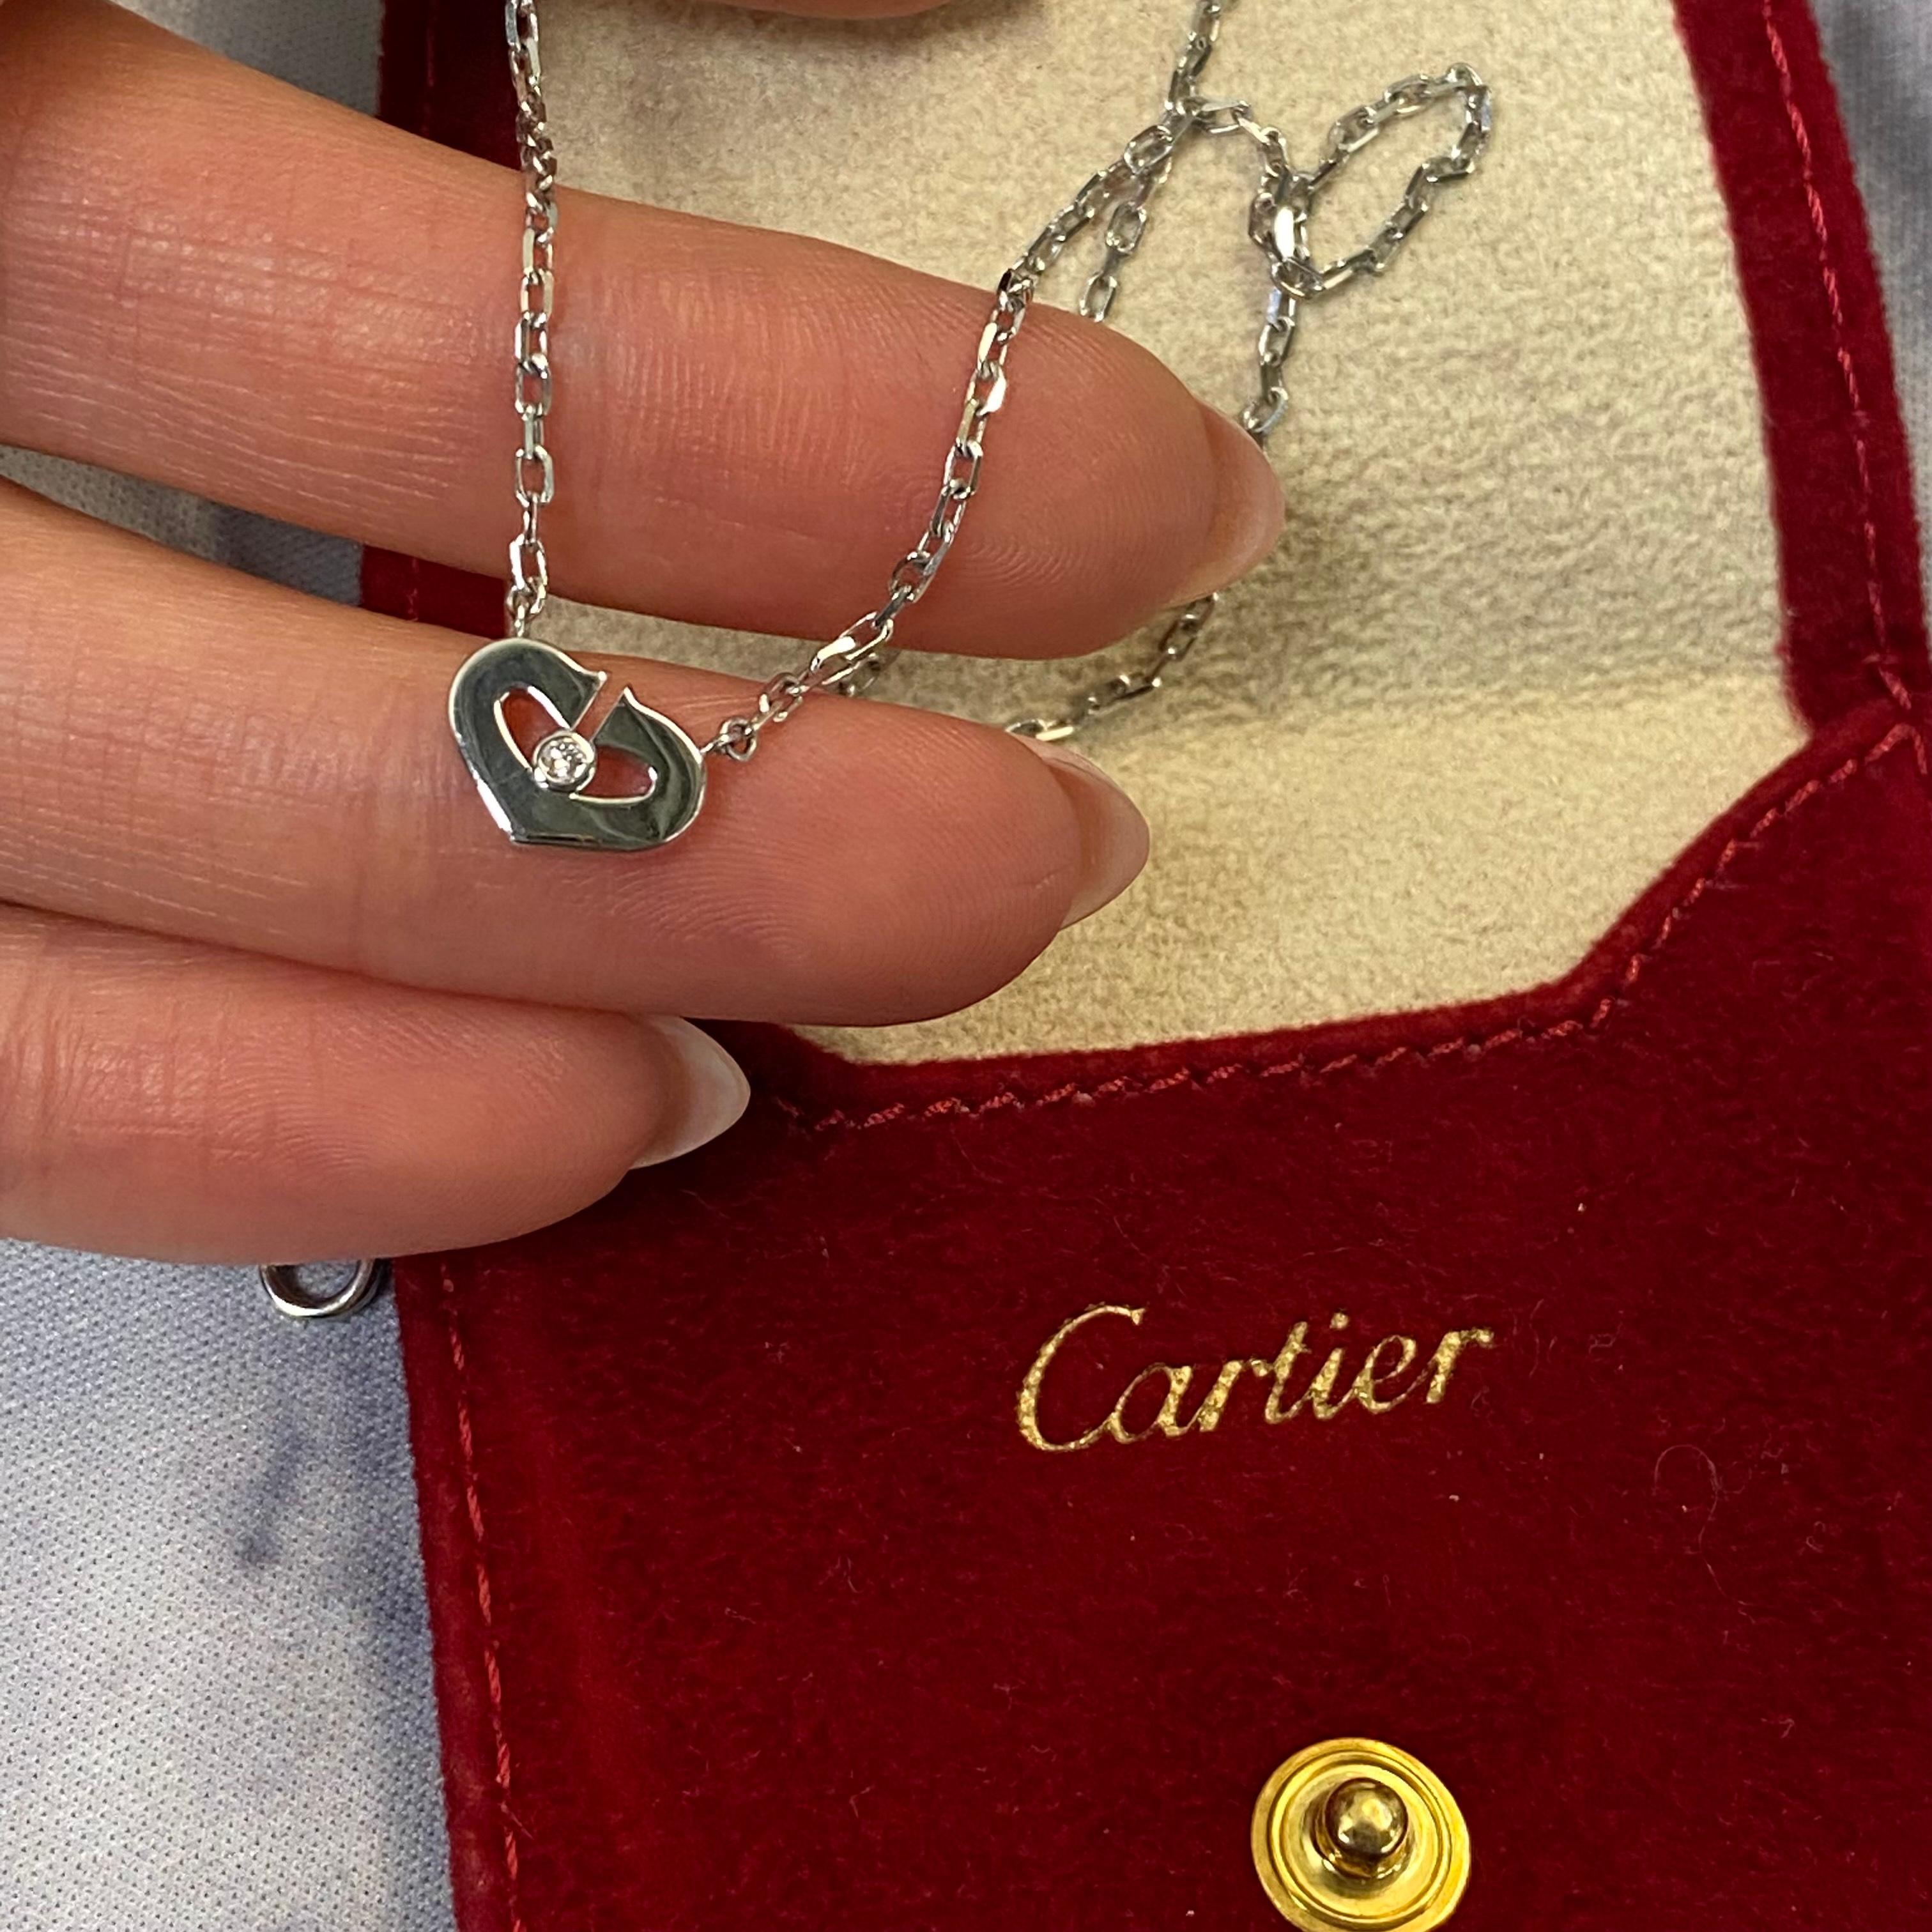 Cartier C Heart Diamond Pendant Necklace 18k White Gold 0.02cttw 2